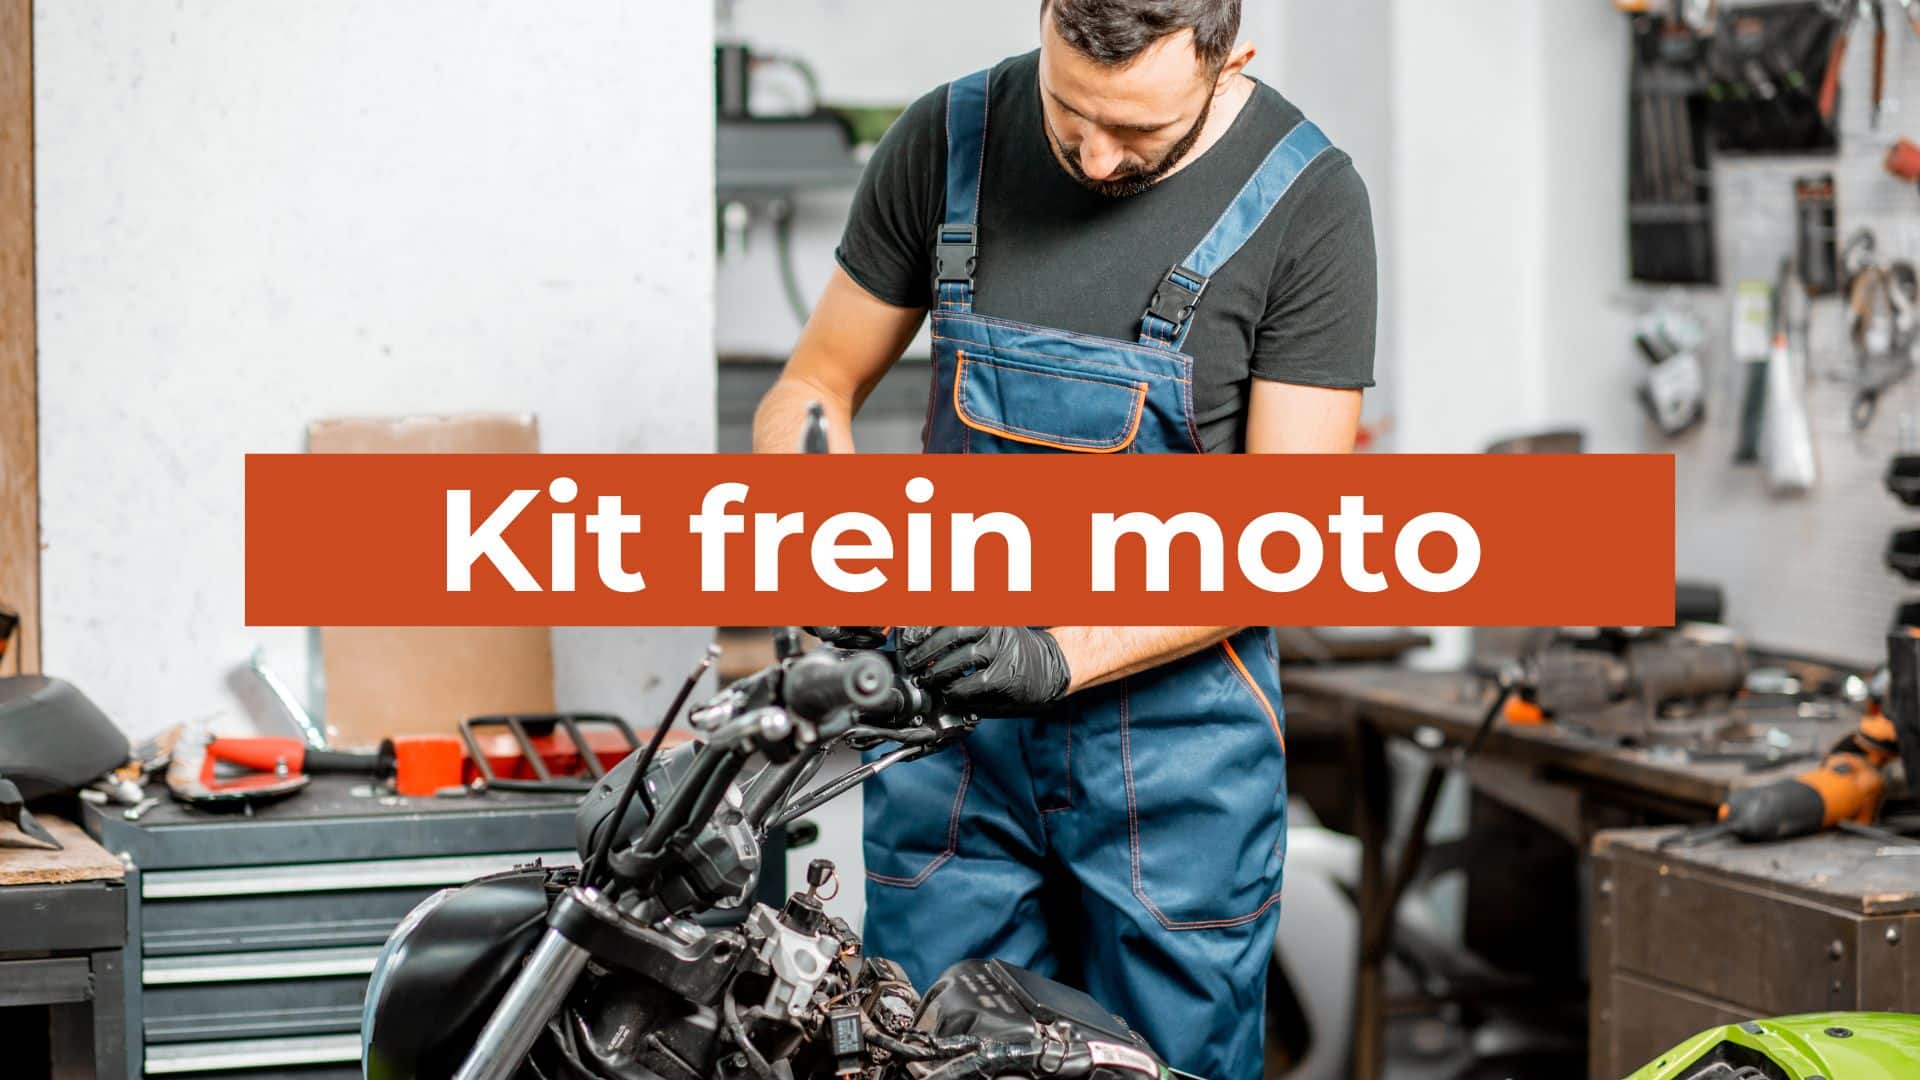 kit frein moto